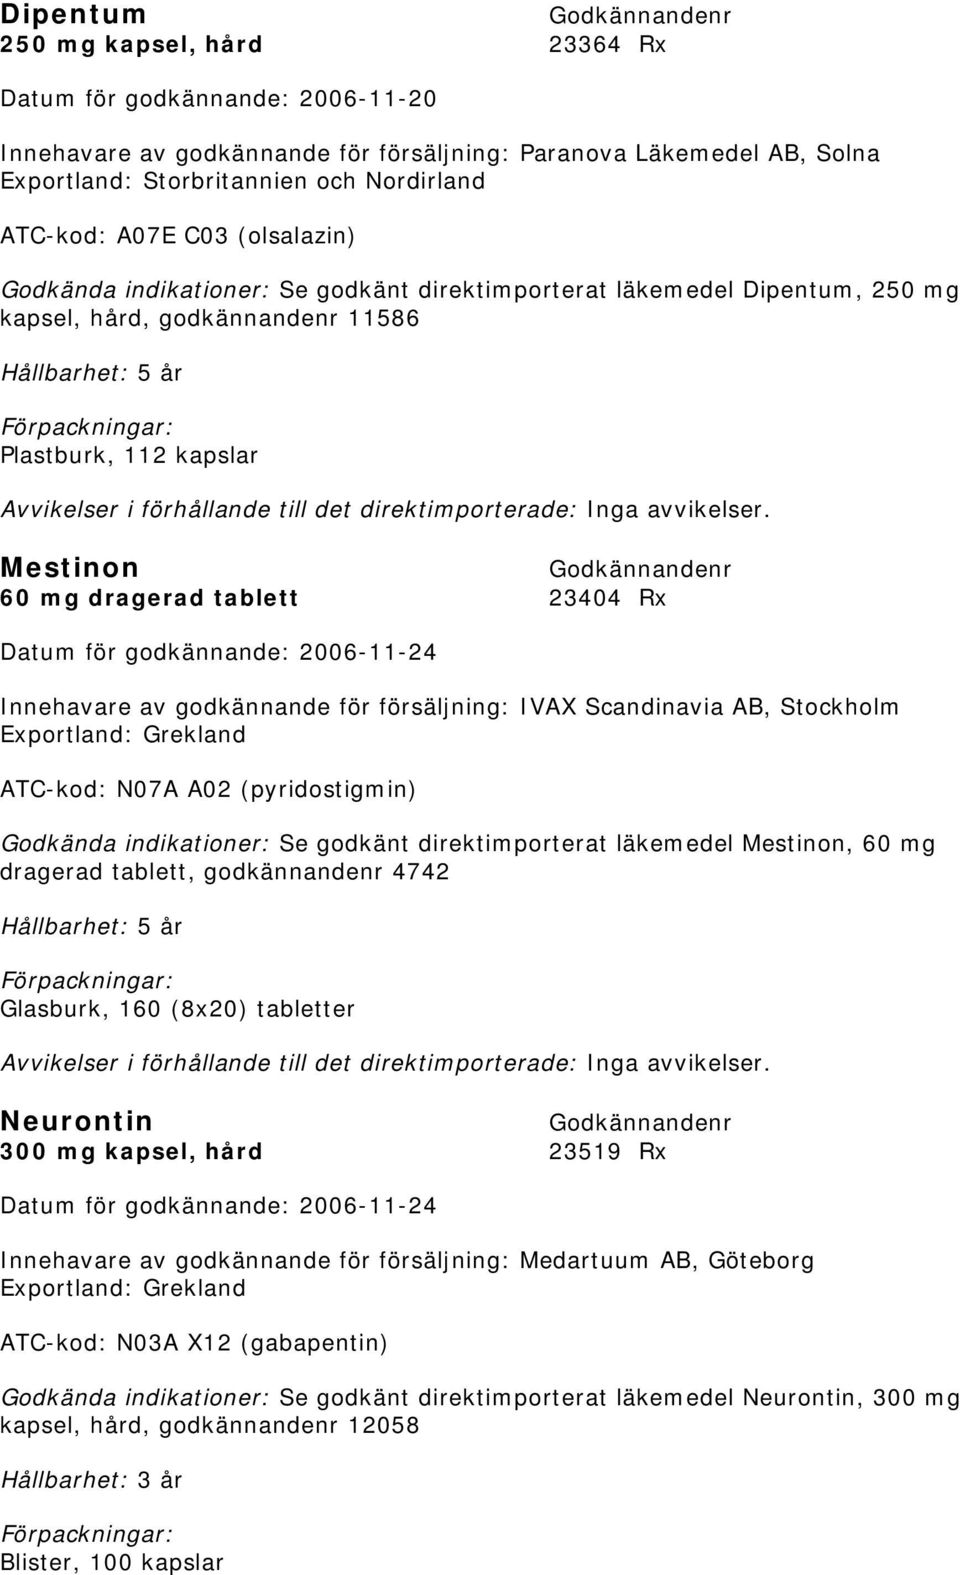 23404 Rx Innehavare av godkännande för försäljning: IVAX Scandinavia AB, Stockholm Exportland: Grekland ATC-kod: N07A A02 (pyridostigmin) Godkända indikationer: Se godkänt direktimporterat läkemedel